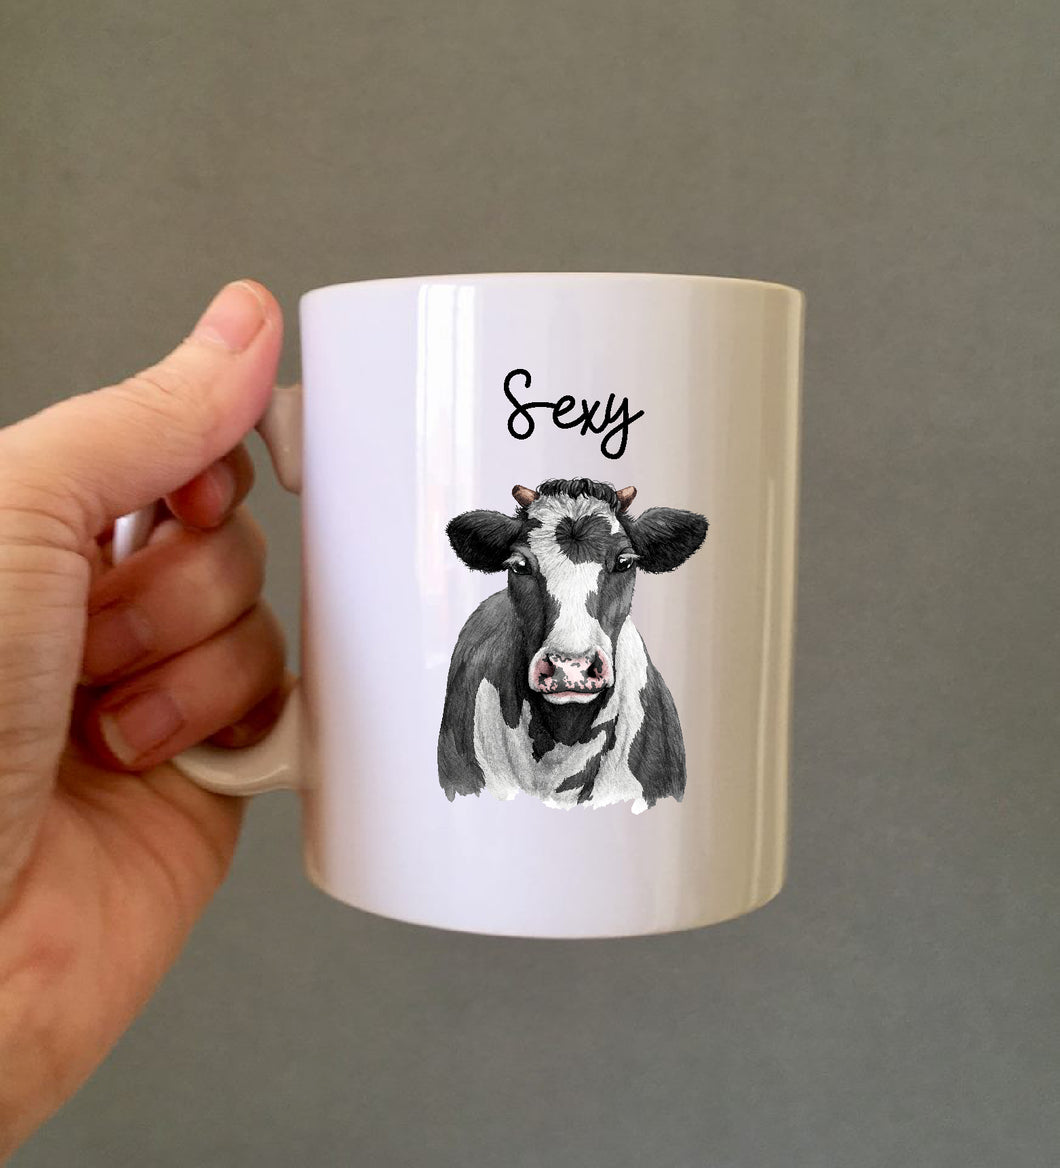 Sexy Cow Ceramic Printed Mug